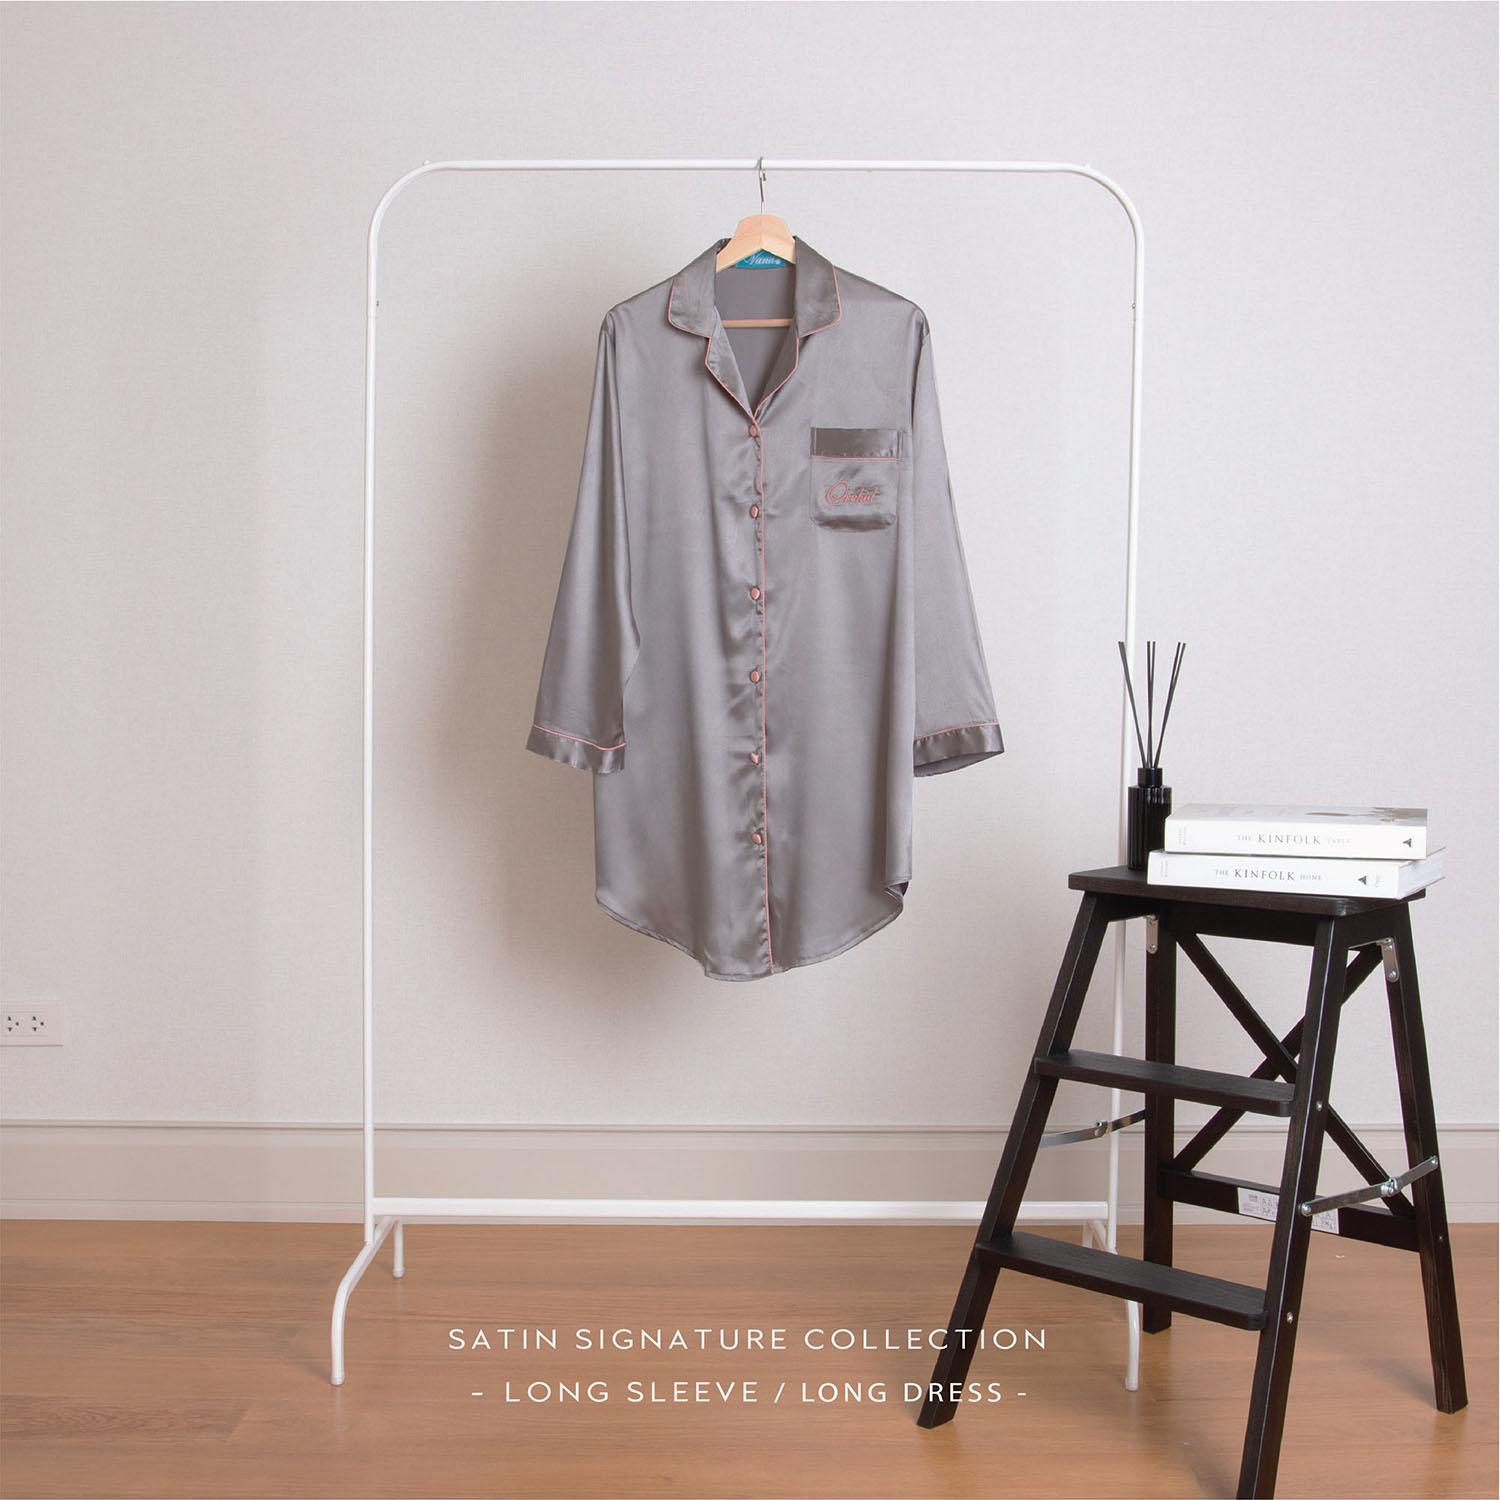 Vana Sleepwear - ชุดนอนซาติน Vana กระโปรงแขนยาว สีพื้น